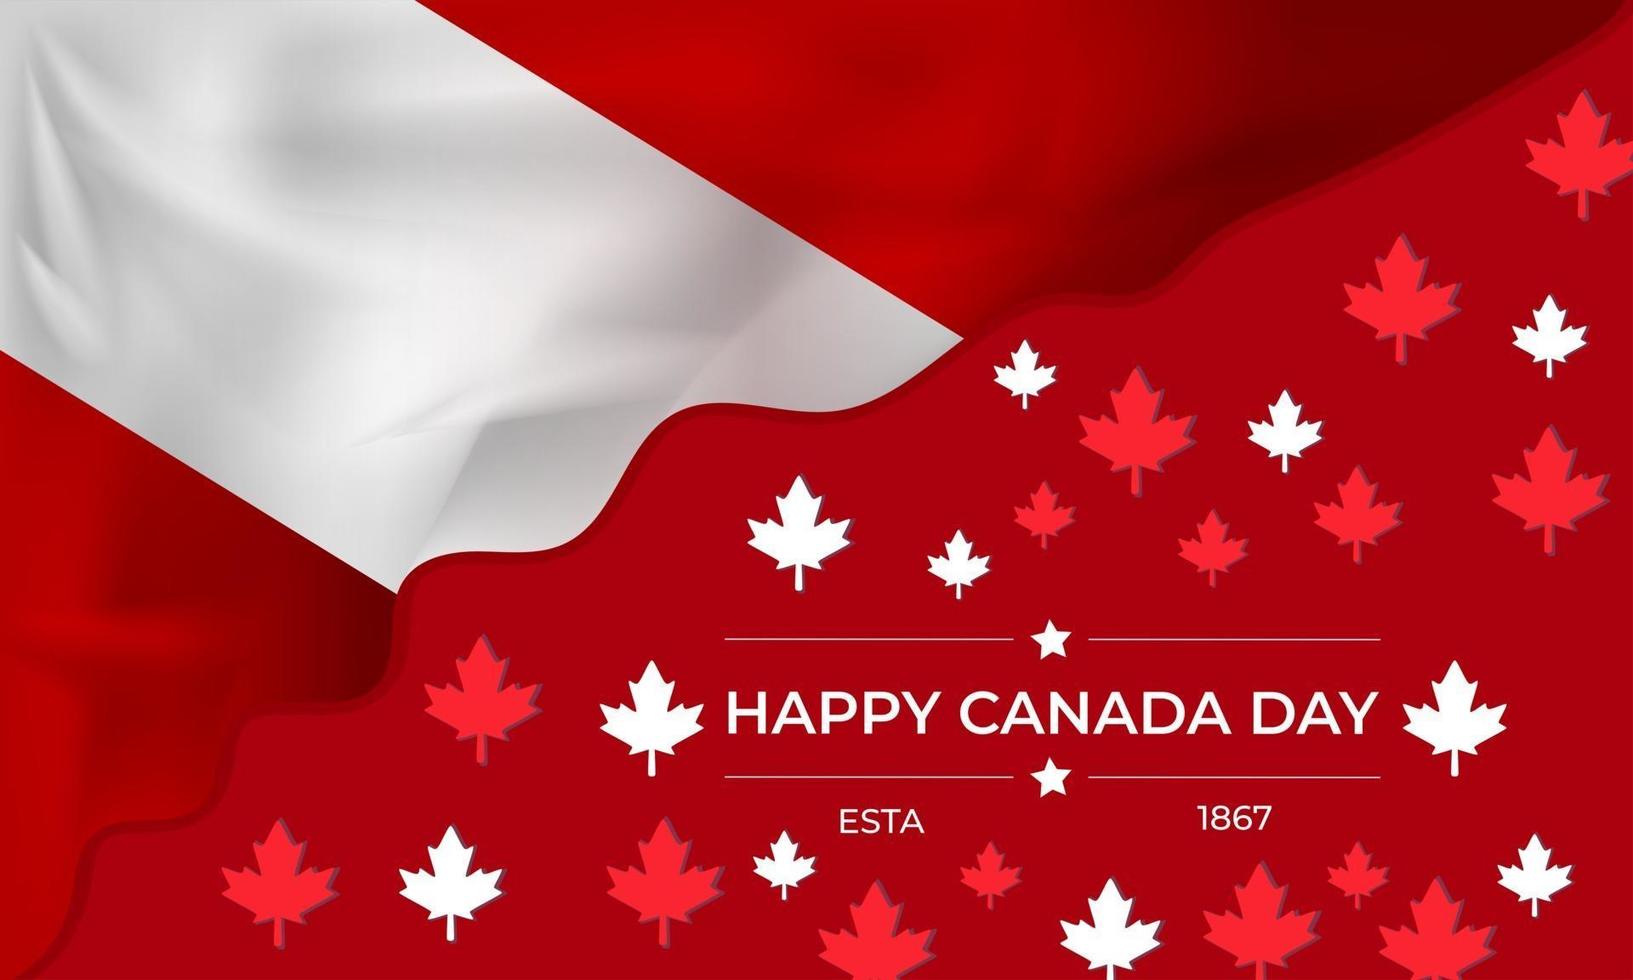 Kanada dag banner mall med lönnlöv och Kanada flagga vektor